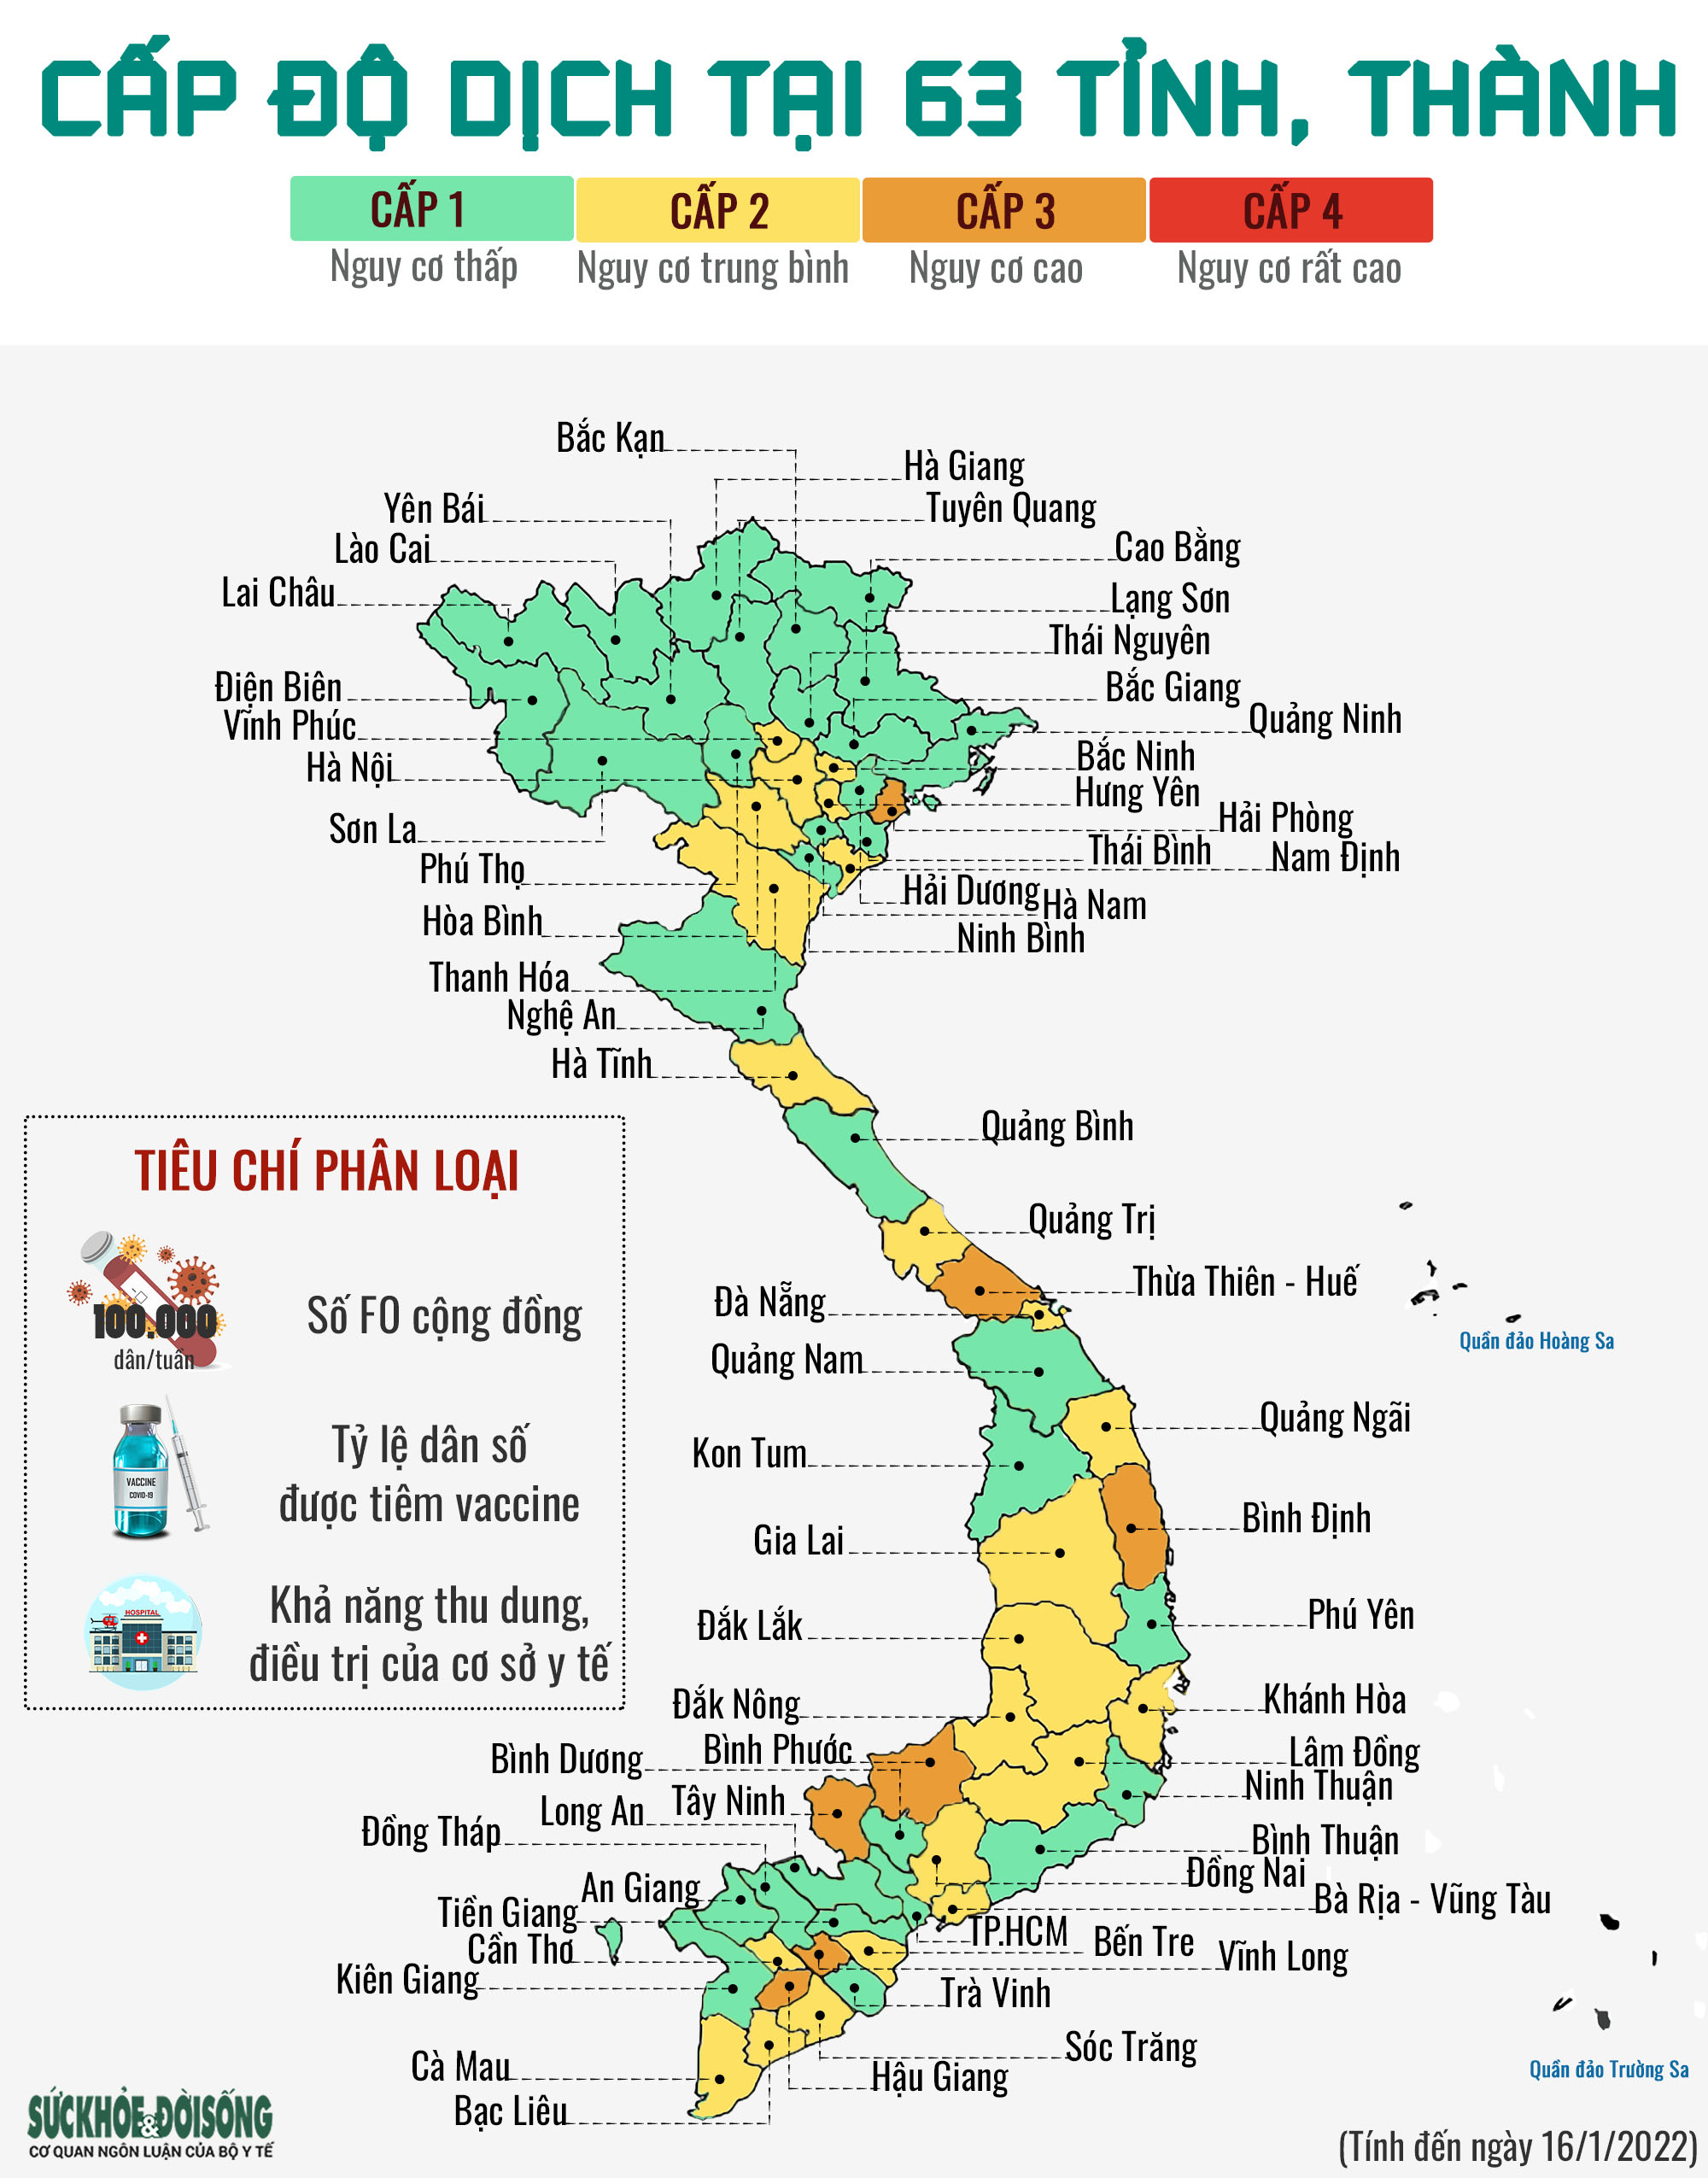 [Infographic] Chi tiết cấp độ dịch tại 63 tỉnh thành phố trong cả nước - Ảnh 1.